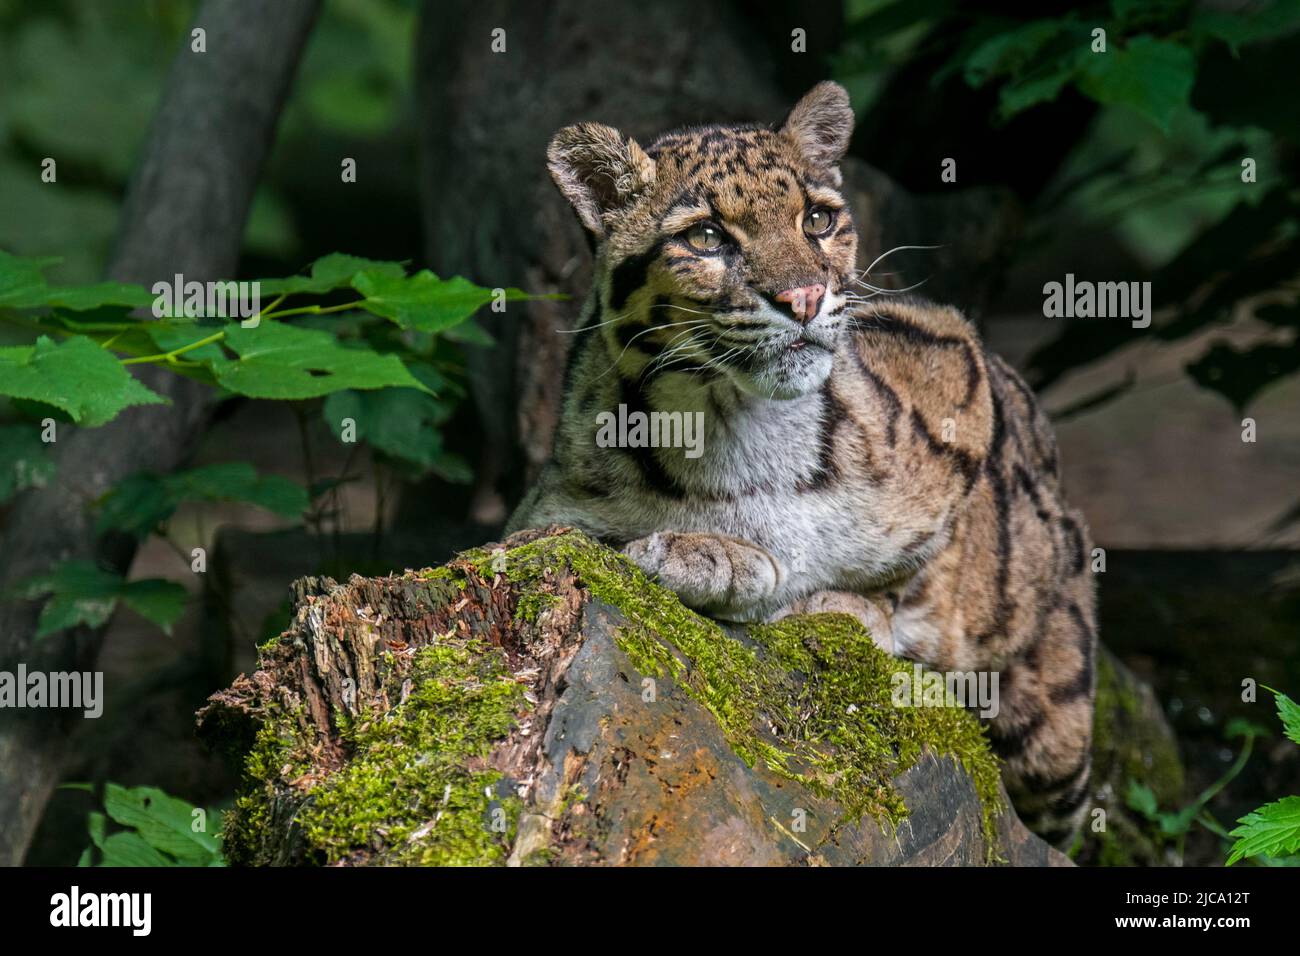 Chat sauvage de léopard (Neofelis nebulosa), originaire des contreforts de l'Himalaya, à travers l'Asie continentale du Sud-est jusqu'en Chine méridionale Banque D'Images